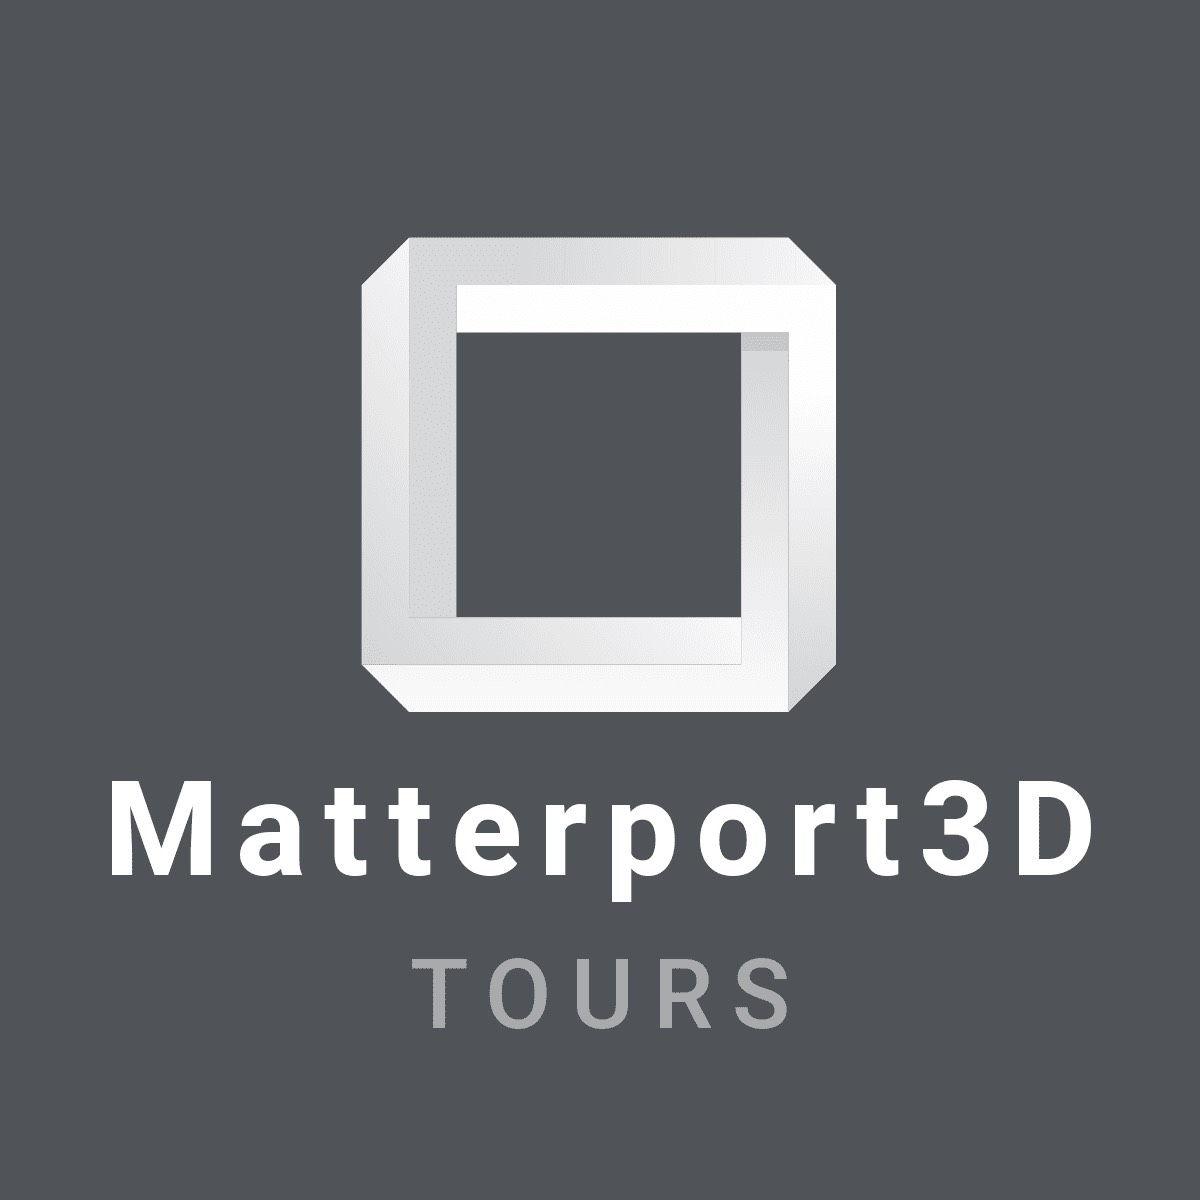 Masterport 3D